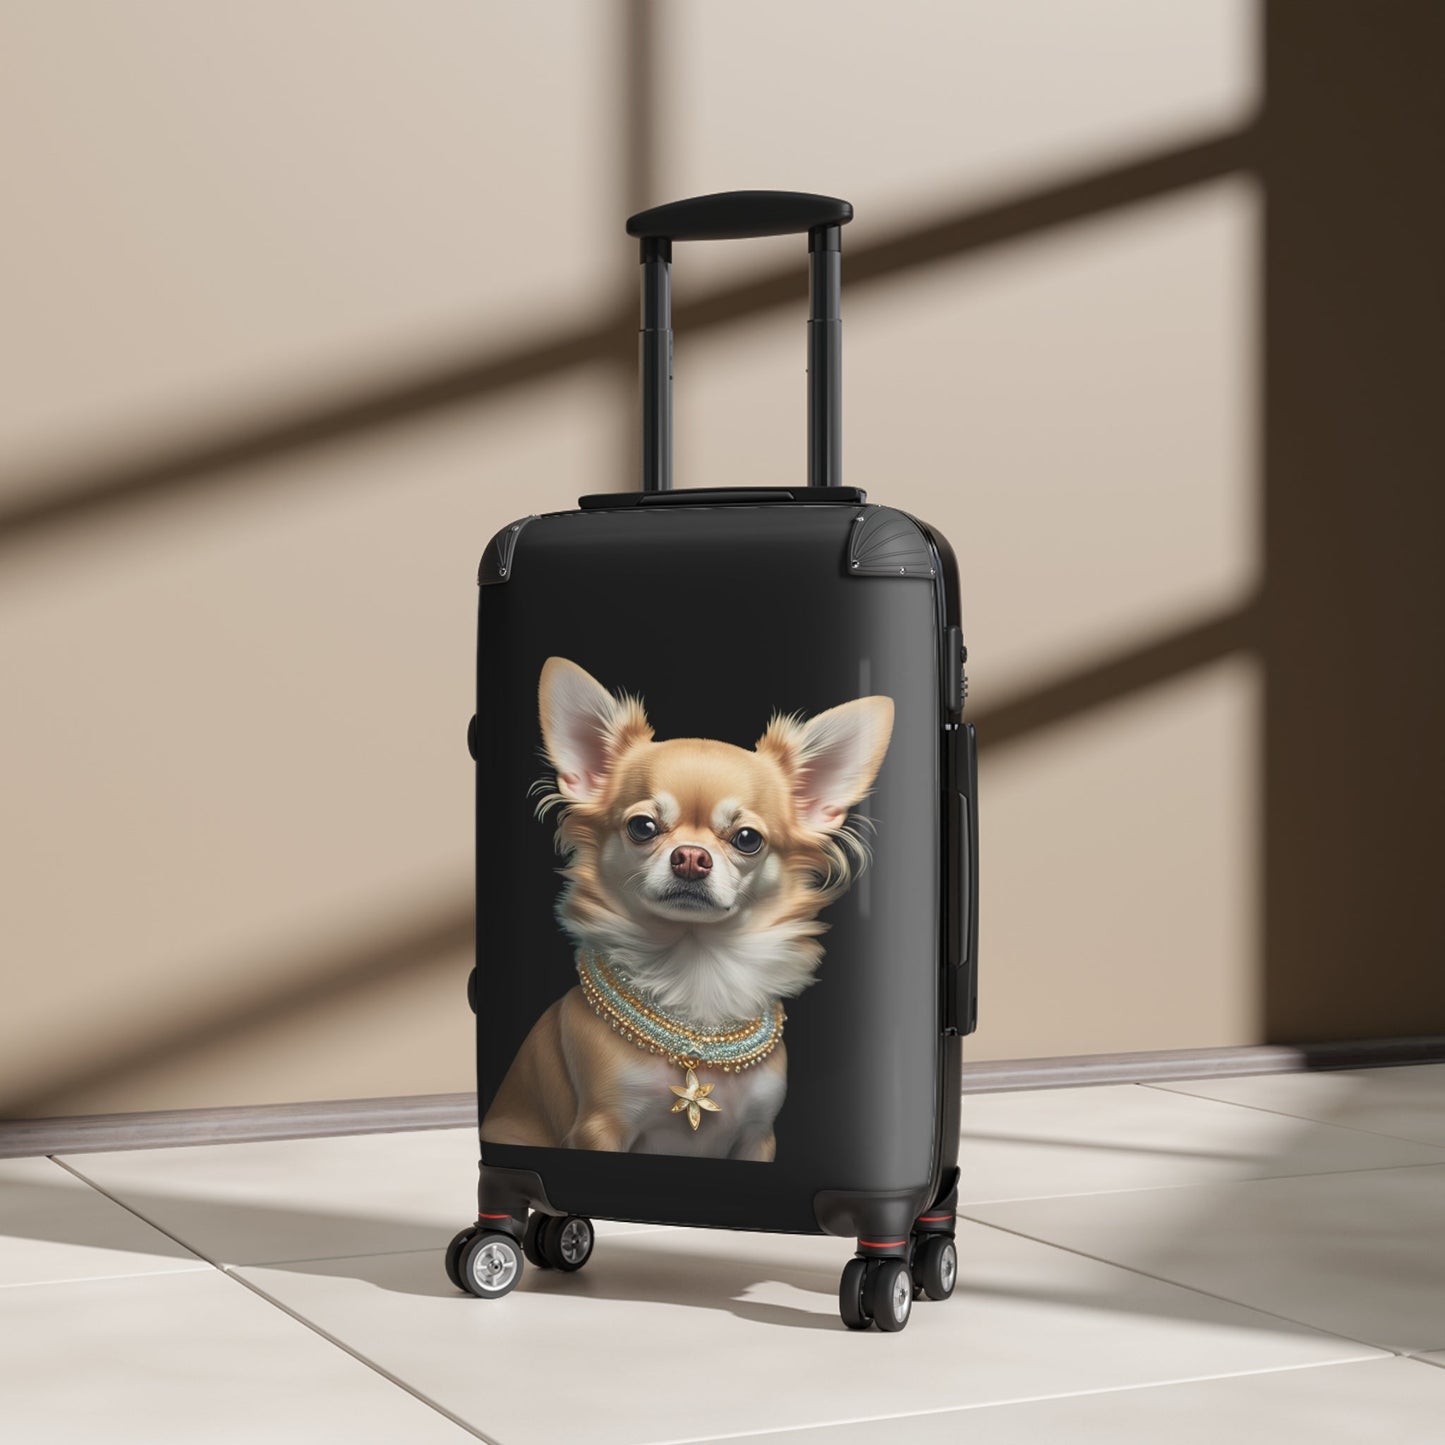 LEONRA Fashionable Suitcase | Customizable Luggage